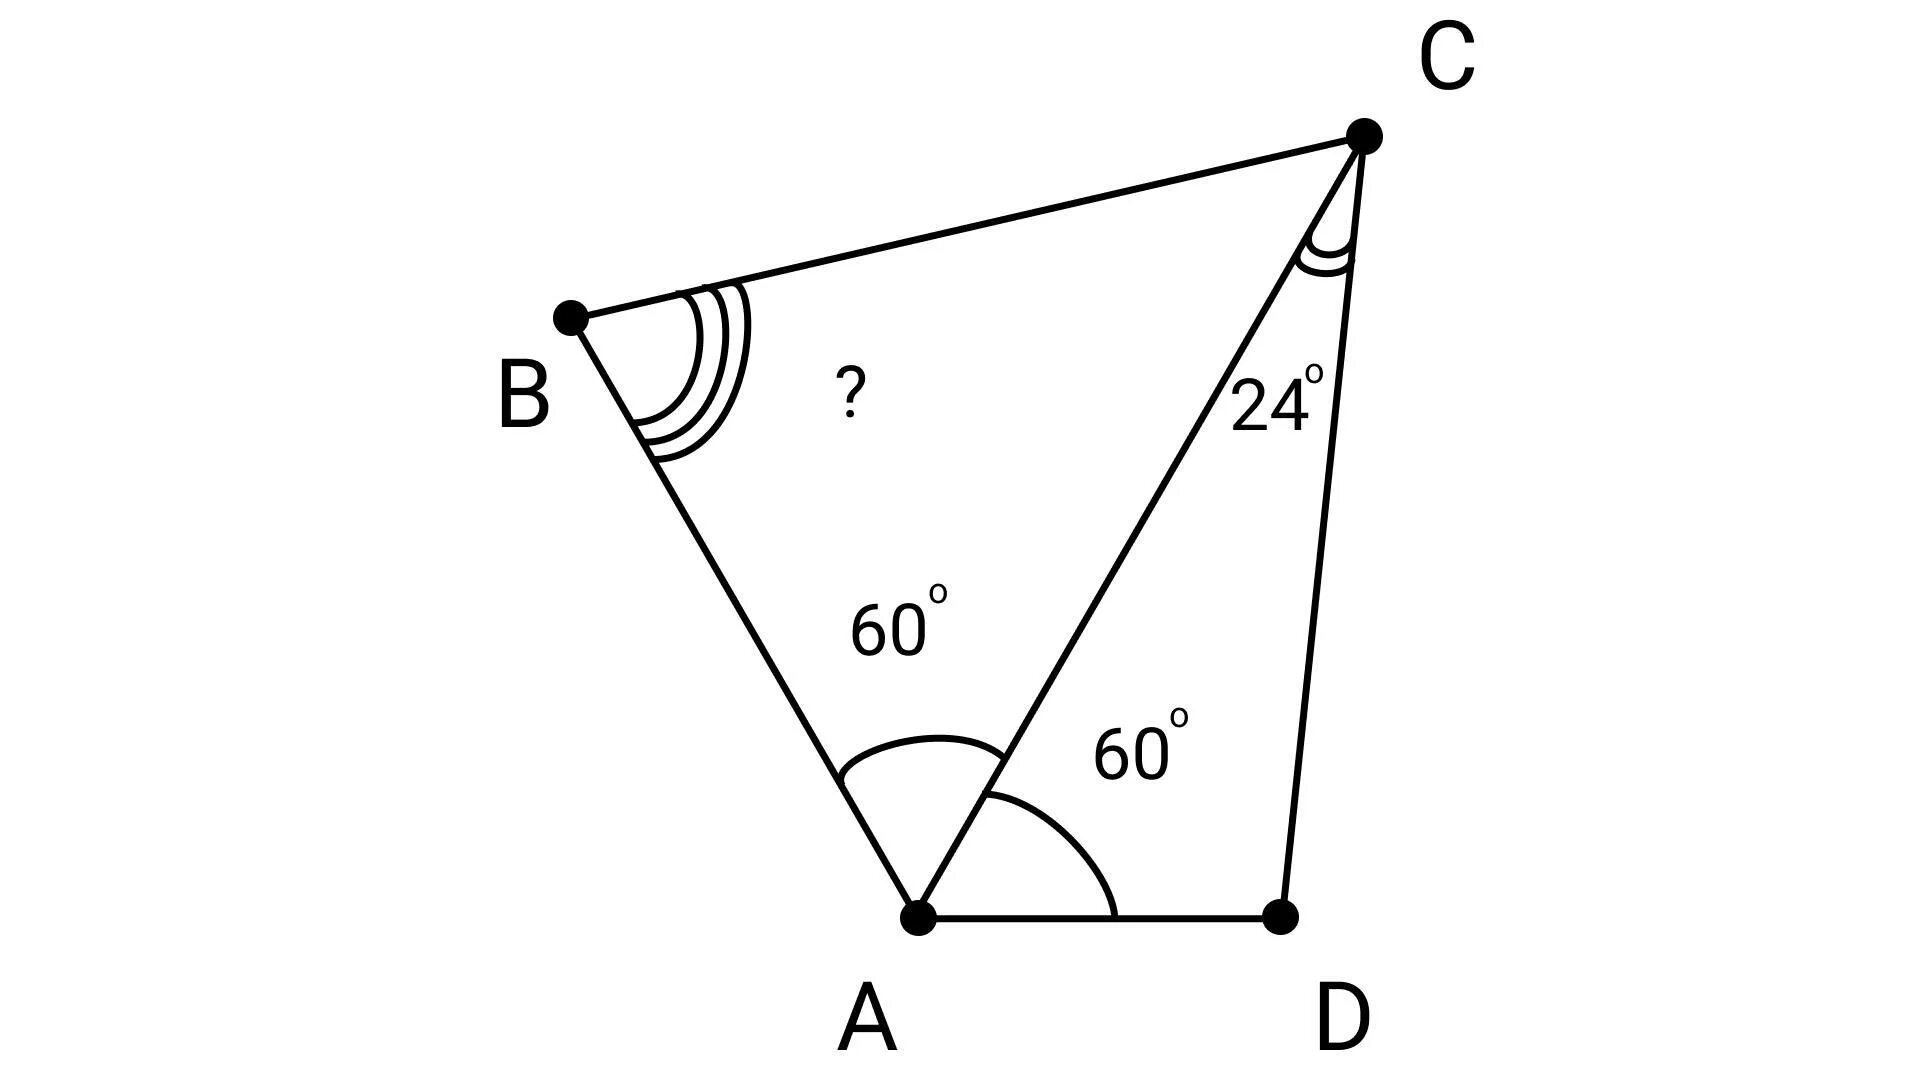 Известно что abcd. В четырёхугольнике ABCD ab CD угол Bac равен углу ACD AC. В четырёхугольнике ABCD ab BC угол Bac чертеж. Про четырехугольник ABCD известно что Bac CAD 60 ab+ad=AC. Про четырехугольник ABCD известно что угол Bac=углу CAD =60 градусов.